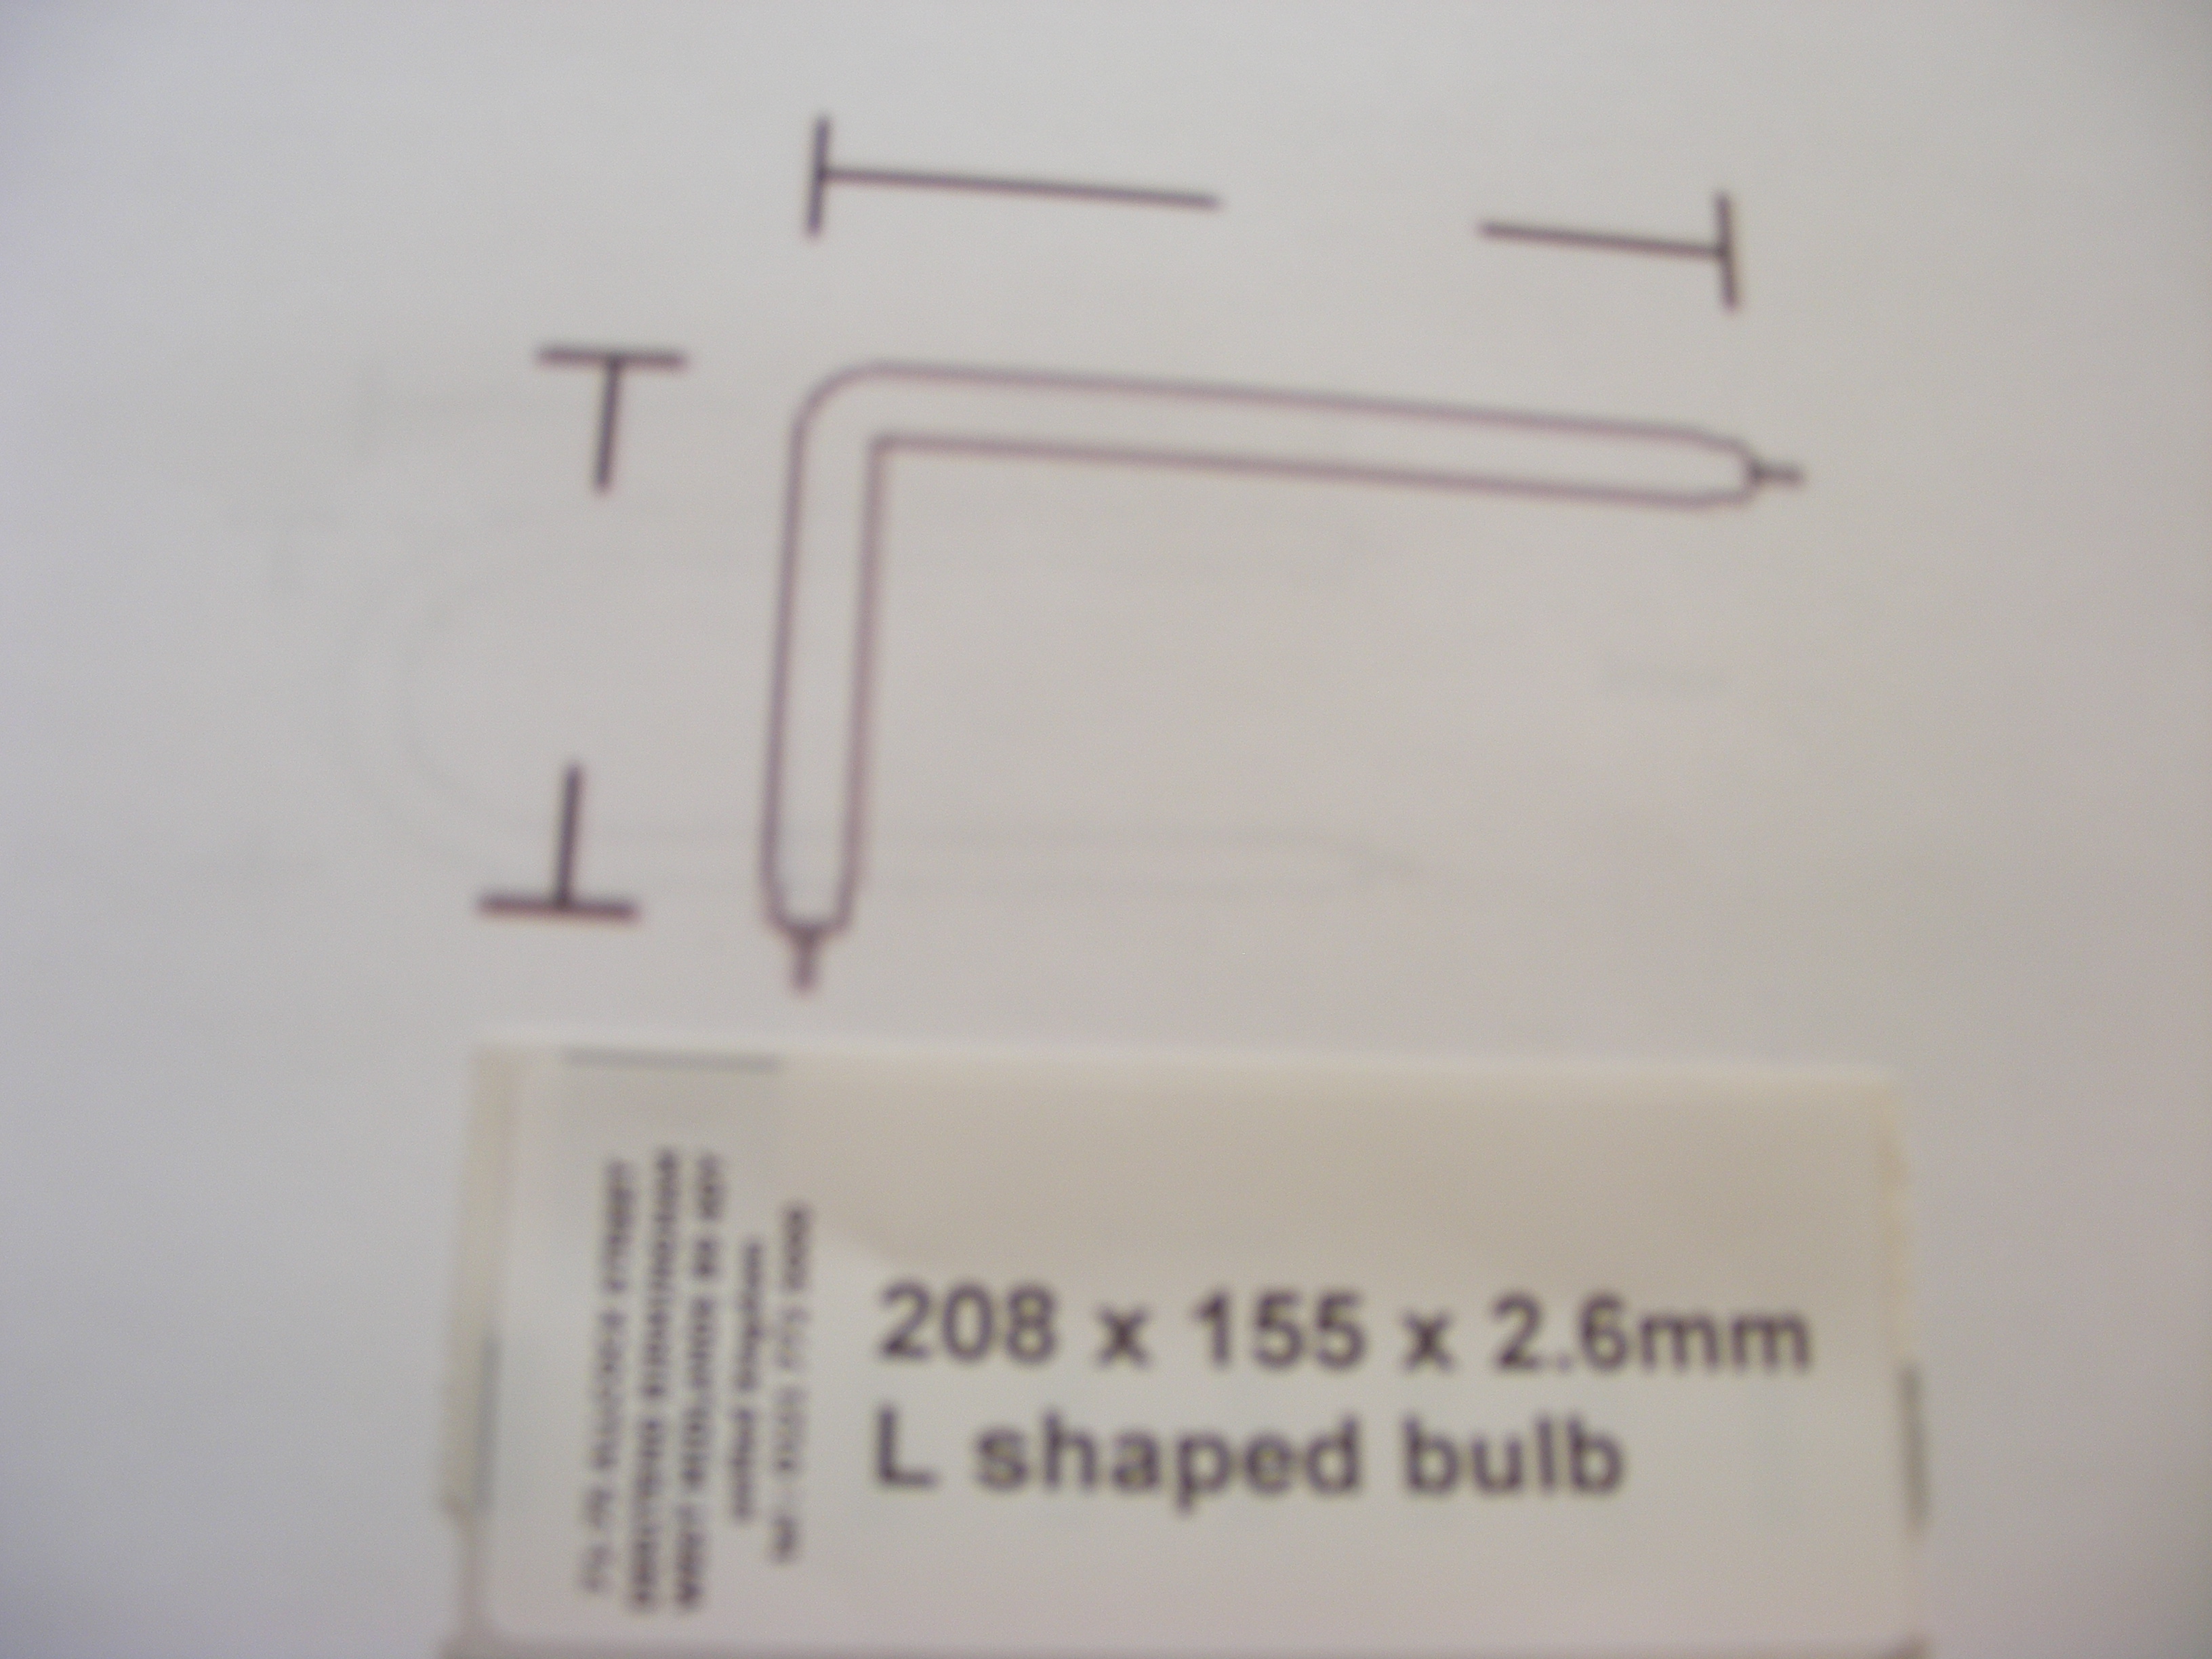 215 x 165 x 2.0mm L shaped bulb